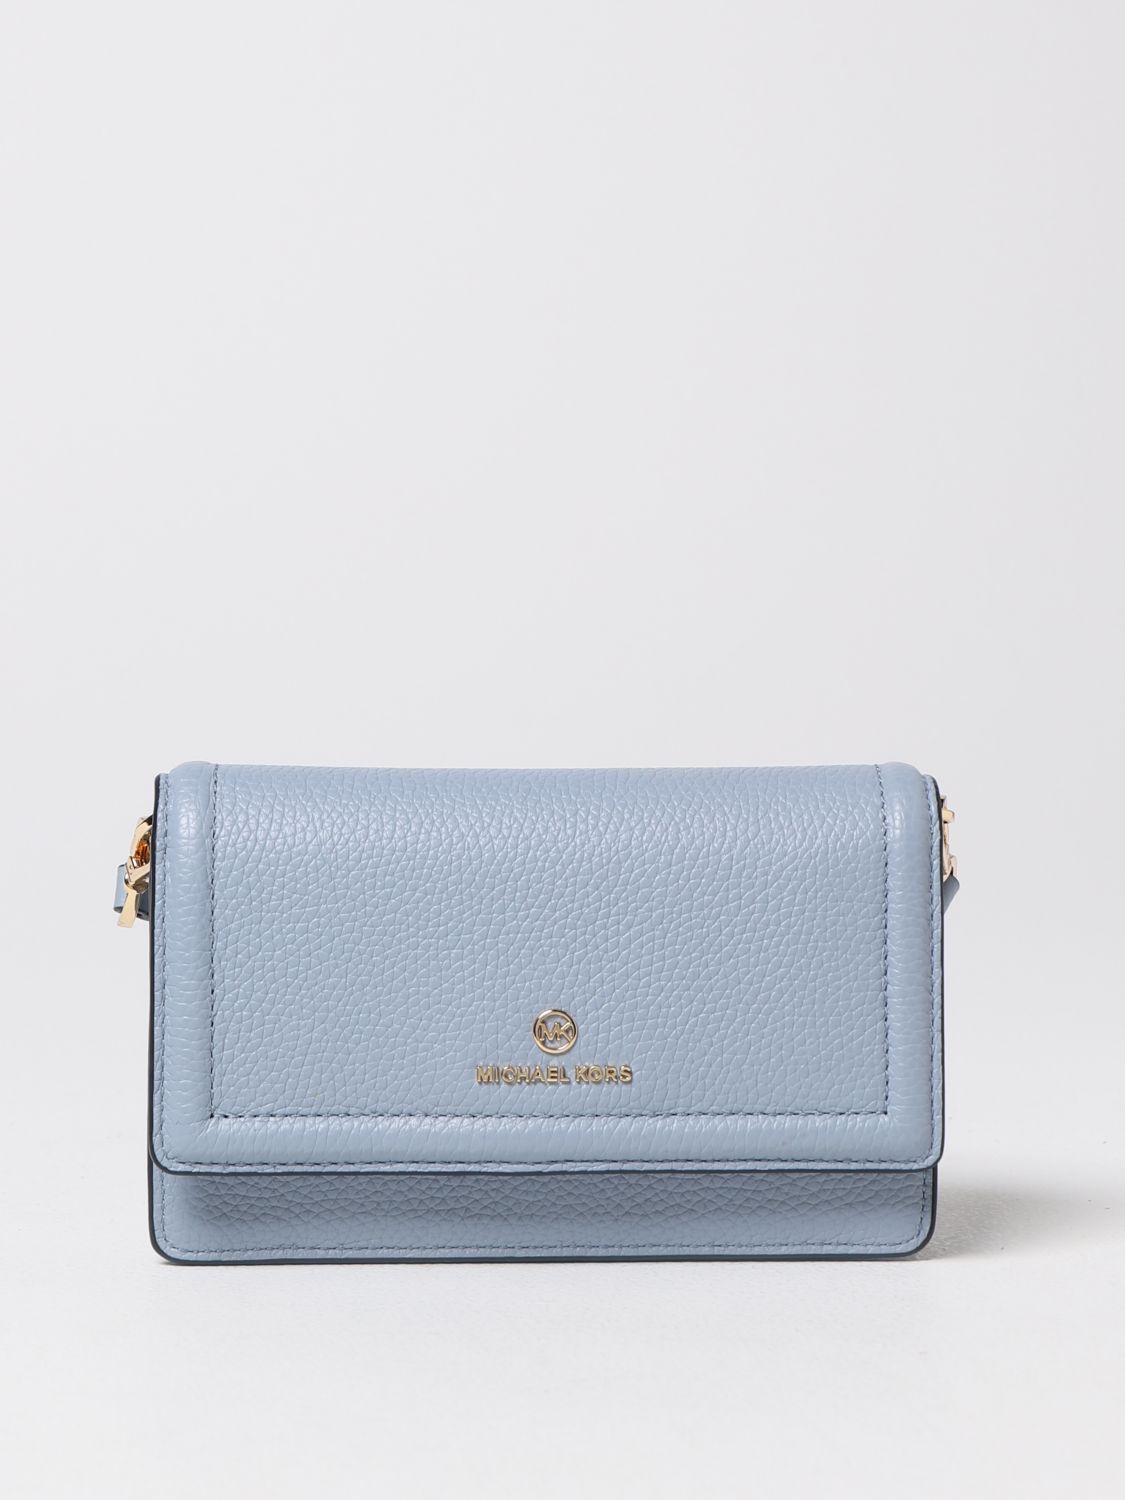 MICHAEL KORS: mini bag for woman - Blue | Michael Kors mini bag 32S1GT9C5L  online on 